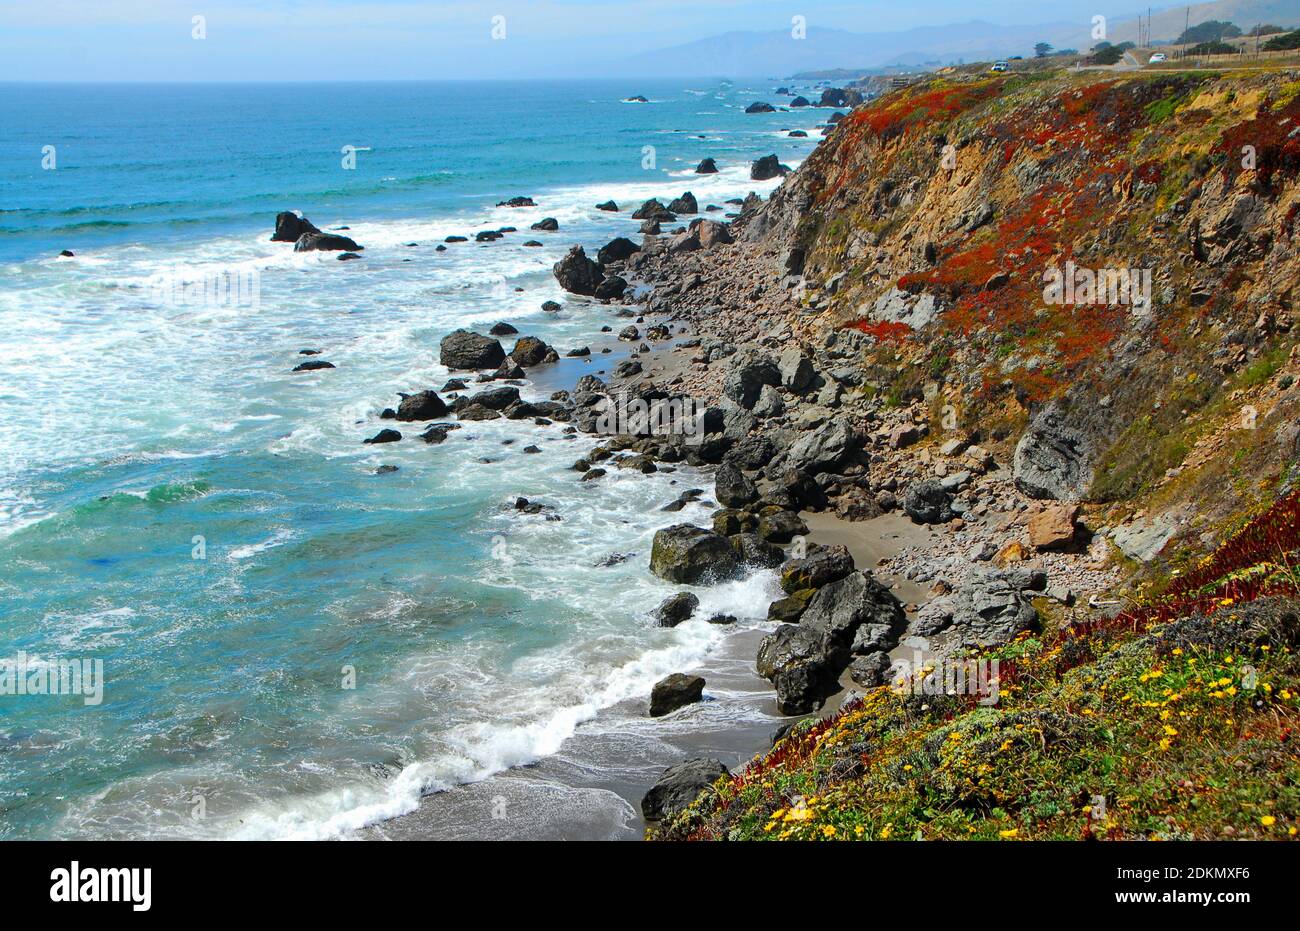 Los acantilados cubiertos de flores silvestres conducen al Océano Pacífico y a una playa con rocas y arena, en el norte de California, EE.UU. Foto de stock